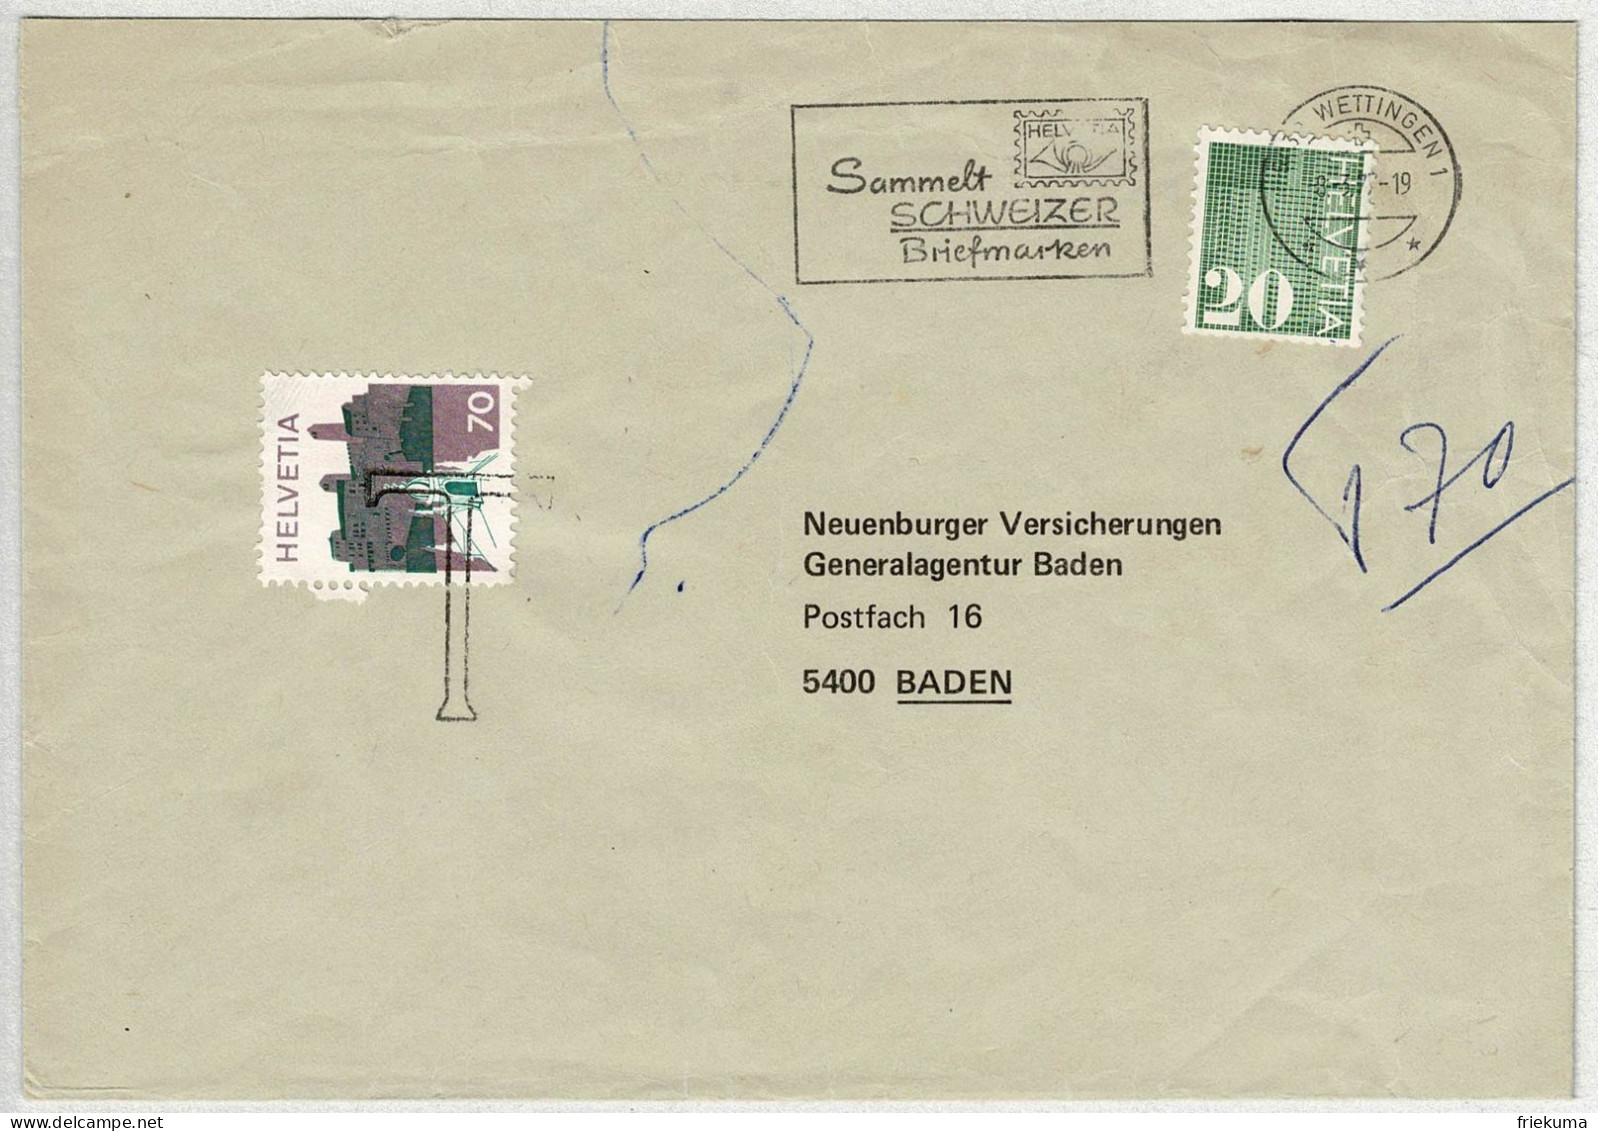 Schweiz 1977, Brief Wettingen - Baden, Automatenmarke, Nachtaxiert Landschaftsbilder - Covers & Documents